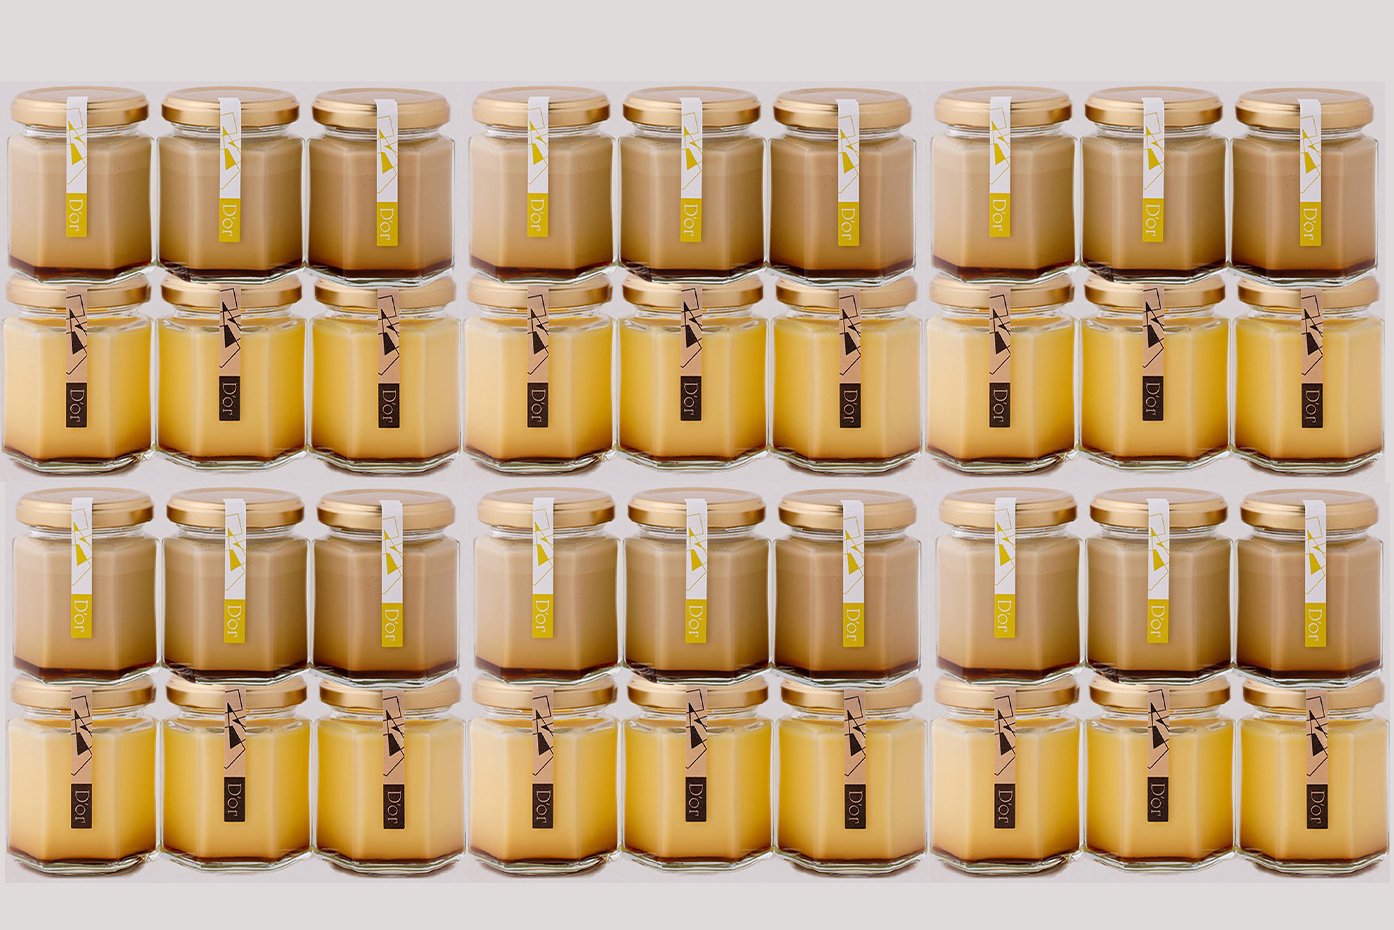 レトロ×加賀棒茶36個セット(レトロプリン18個・加賀棒茶プリン18個)の写真